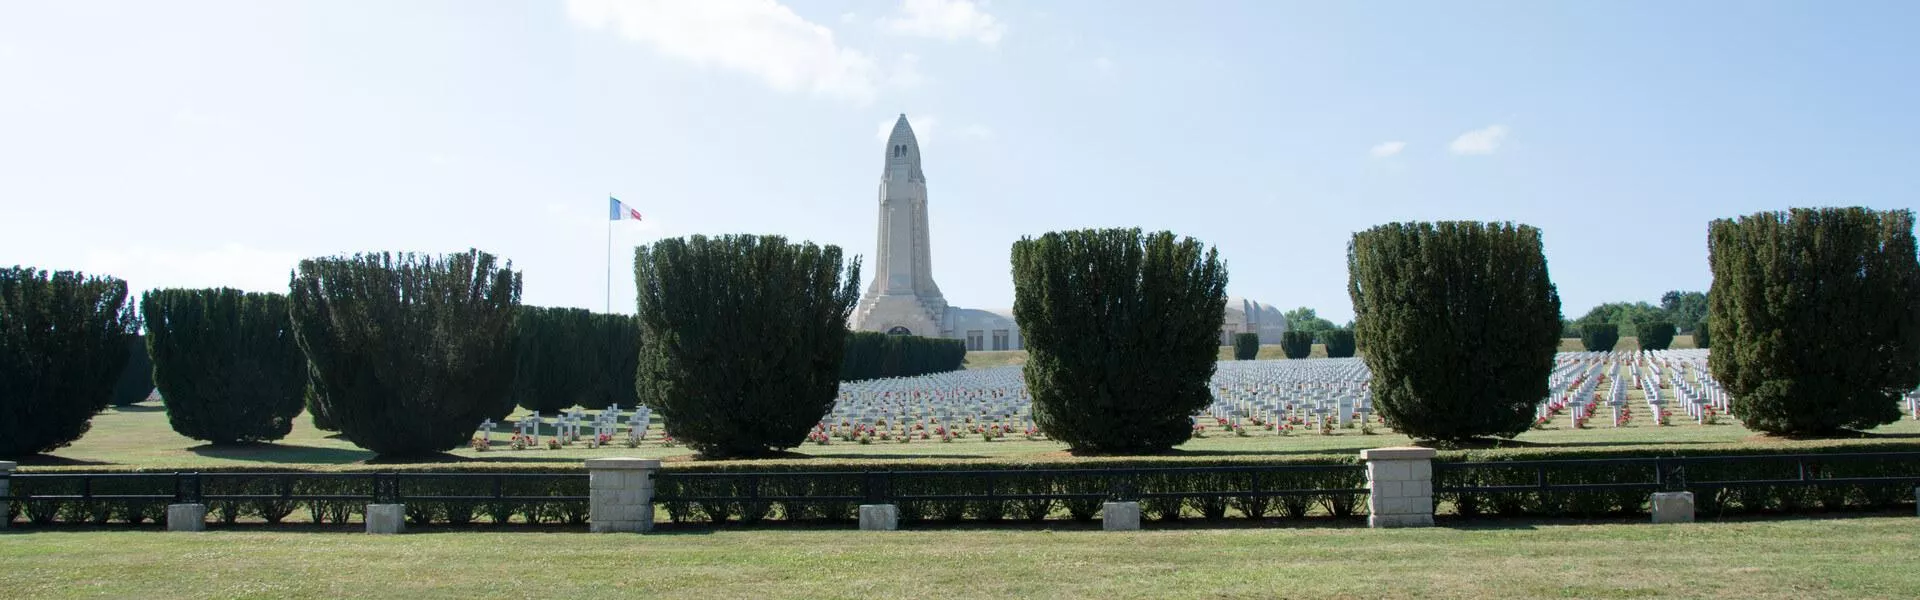 Campings in Verdun zoeken